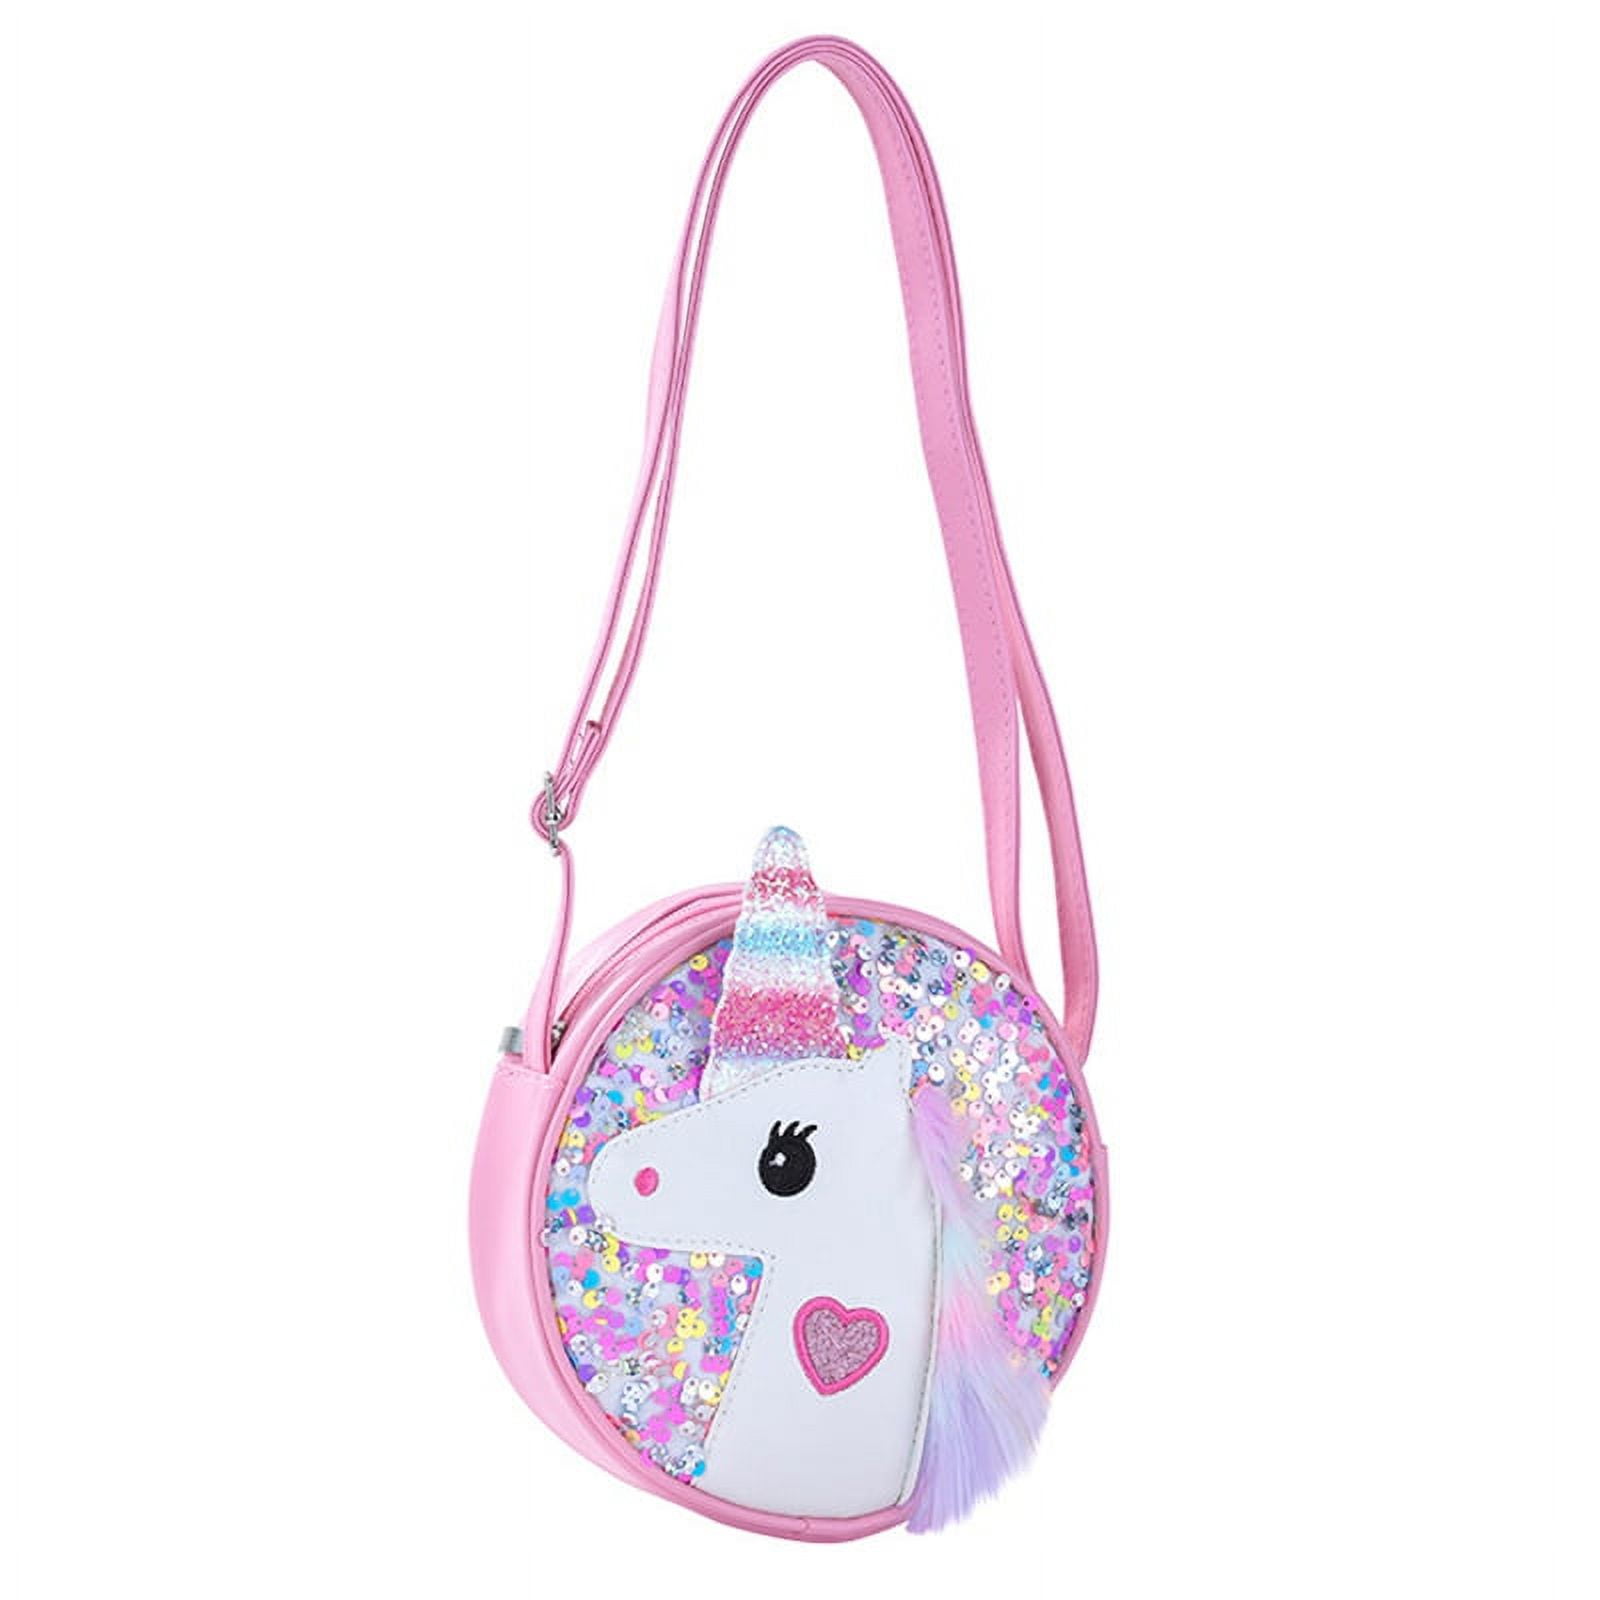 Walmart Celebrate Unicorn Plush Toy White Lavender Rainbow + Carrying Case  New | eBay